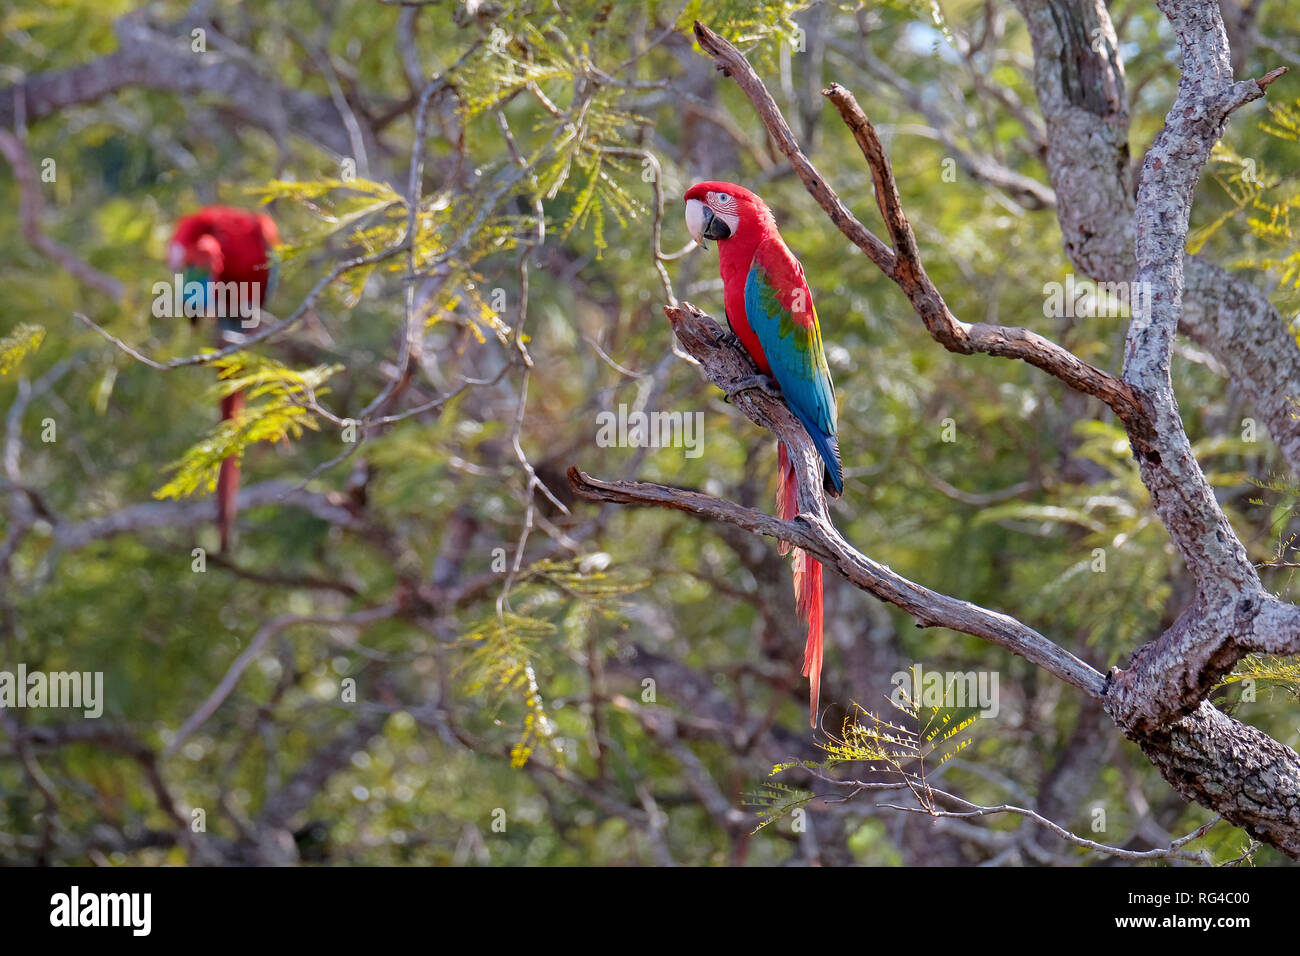 Red And Green Macaws, Ara Chloropterus, Buraco Das Araras, near Bonito, Pantanal, Brazil Stock Photo